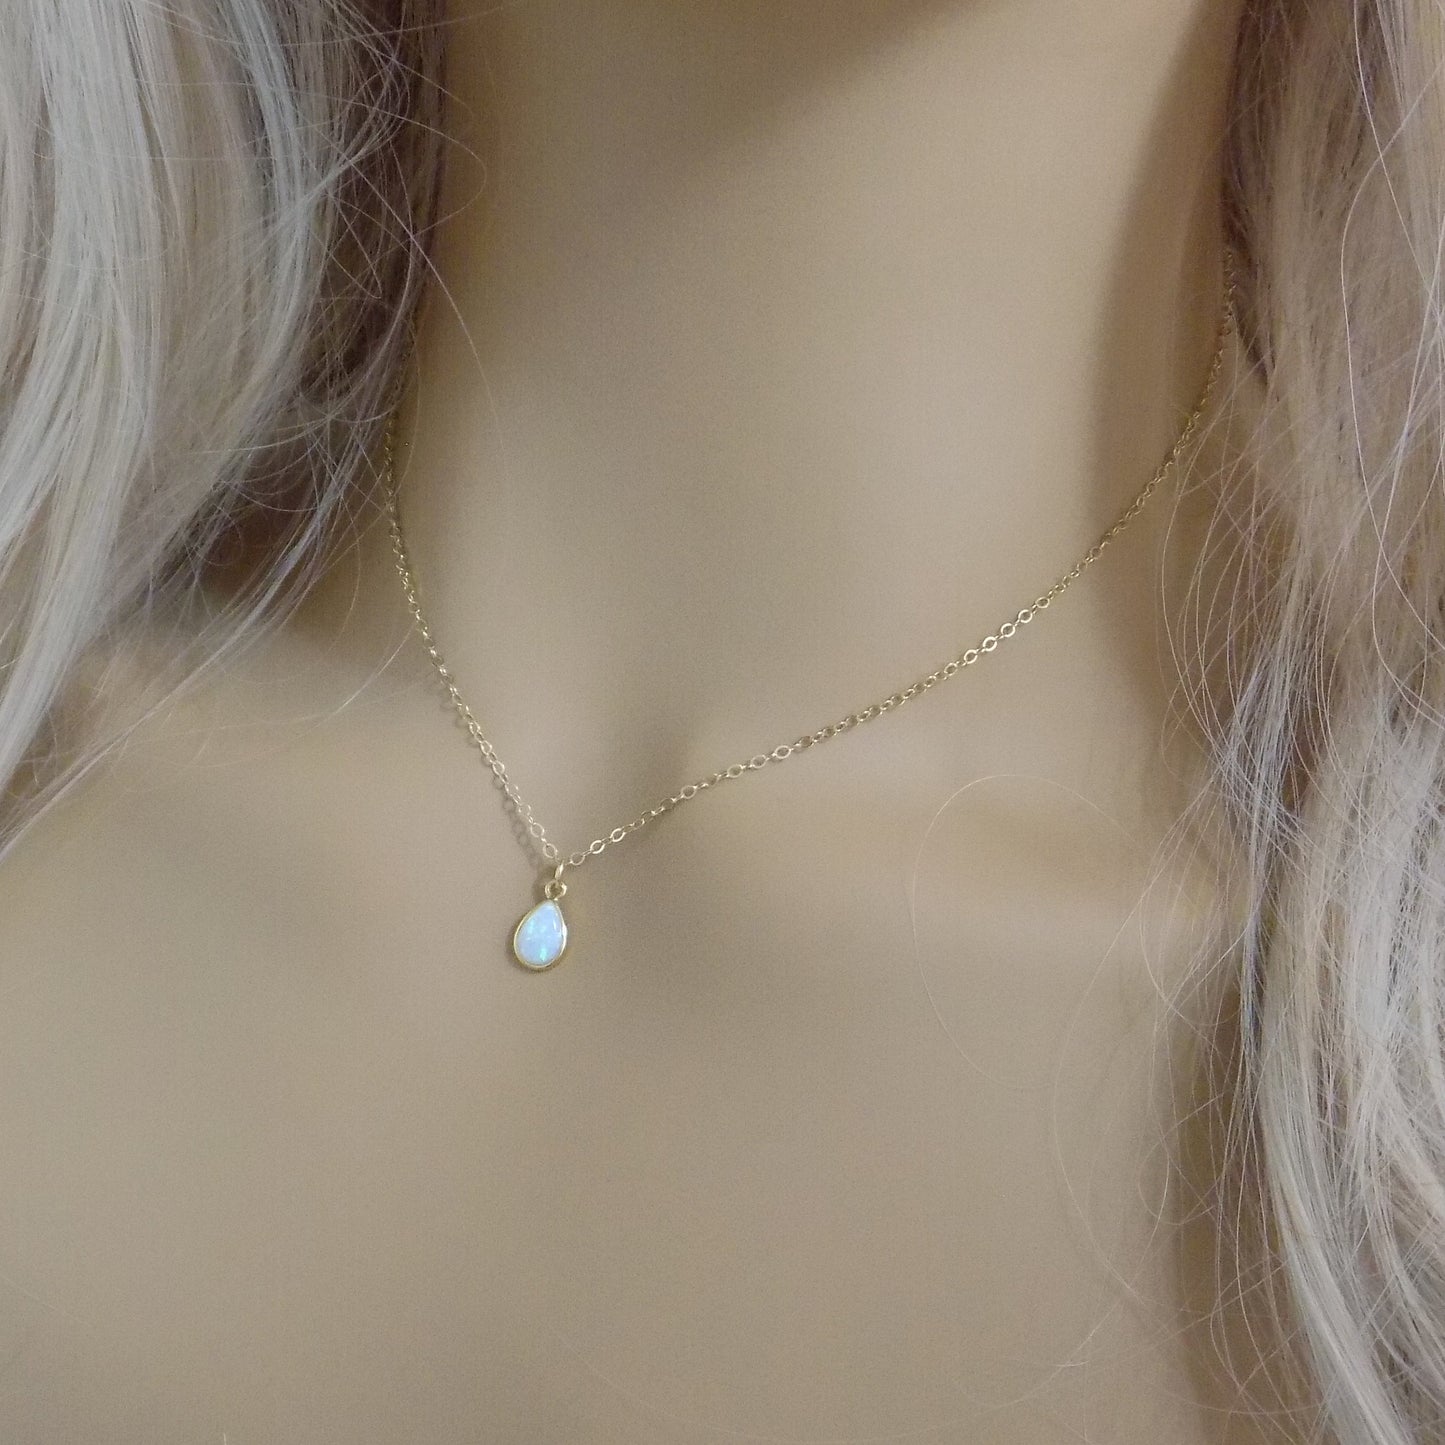 Tiny Opal Necklace Gold, Oval Opal Necklace, Light Blue Opal Necklace, Tiny Layering, October Birthday Gift, L1-02